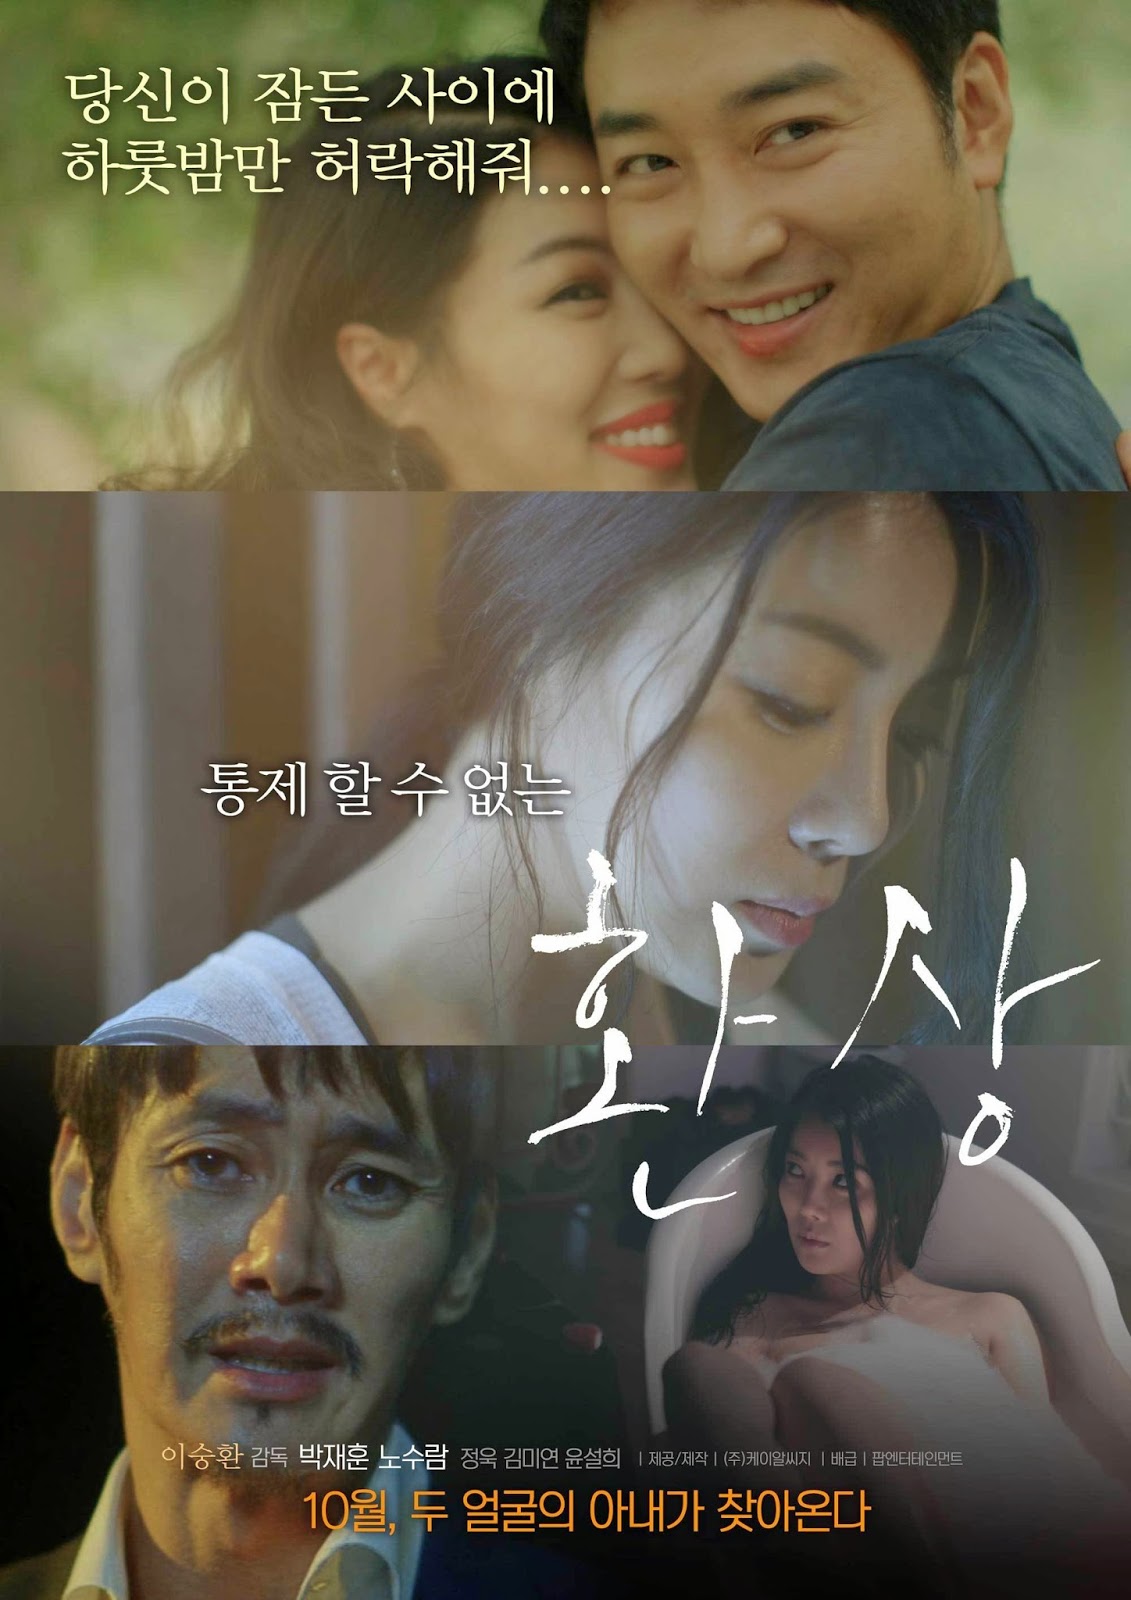 Drama Korea Semi Movie Subtitle Indonesia Cinema55com 